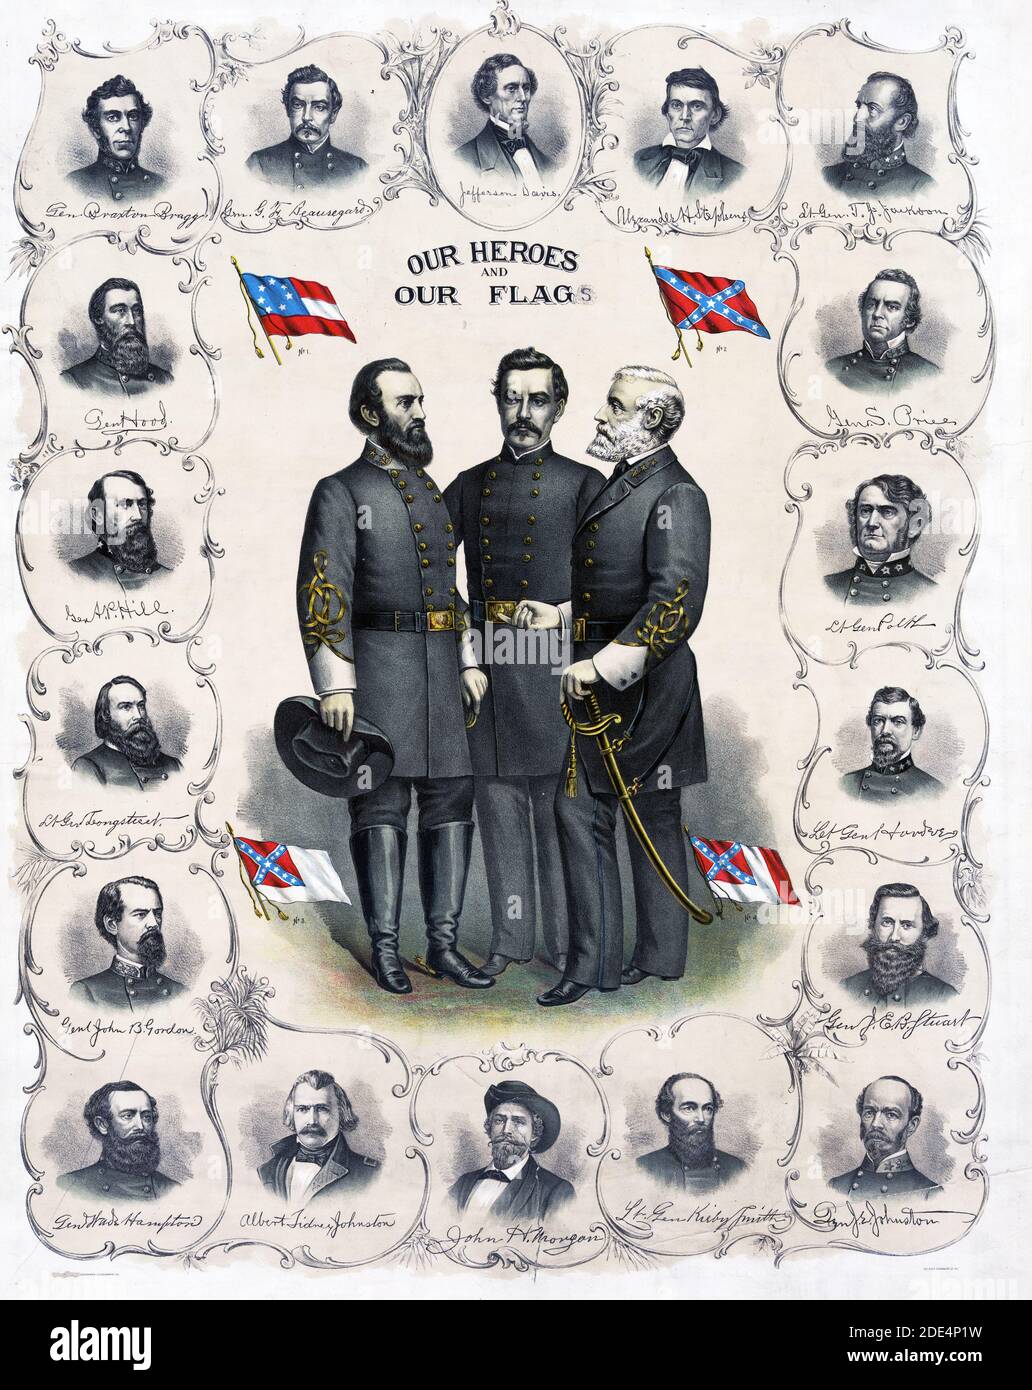 La stampa mostra a tutta lunghezza ritratti di Robert E. Lee, Stonewall Jackson e G.T. Beauregard con quattro versioni della bandiera Confederate circondato da busto ritratti di Jefferson Davis e esercito confederato ufficiali. Foto Stock